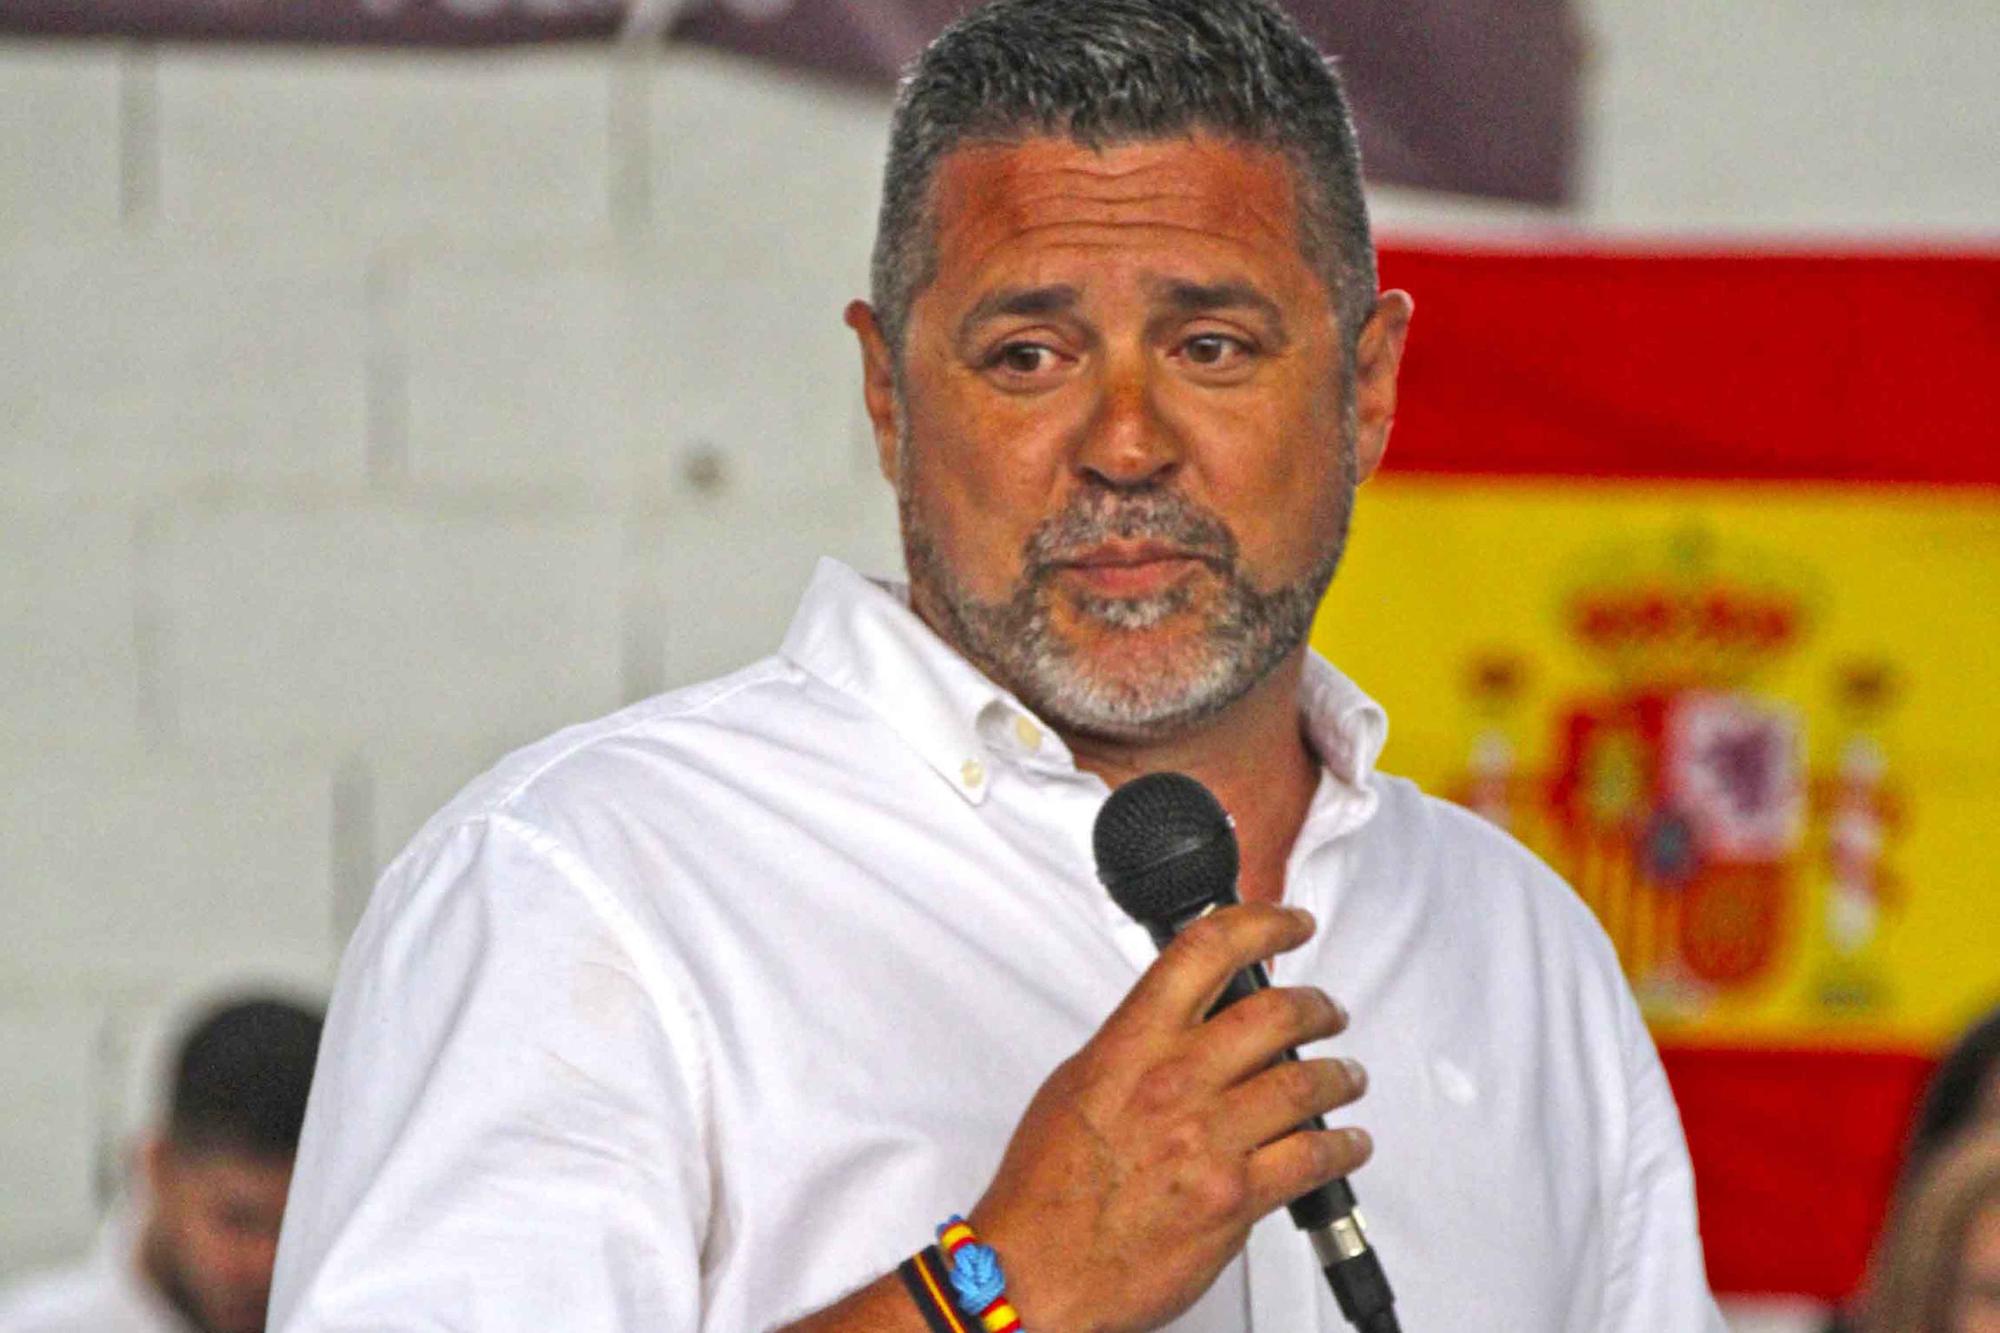 Contigo Sagunto-Puerto presenta su candidatura para las elecciones del 28M